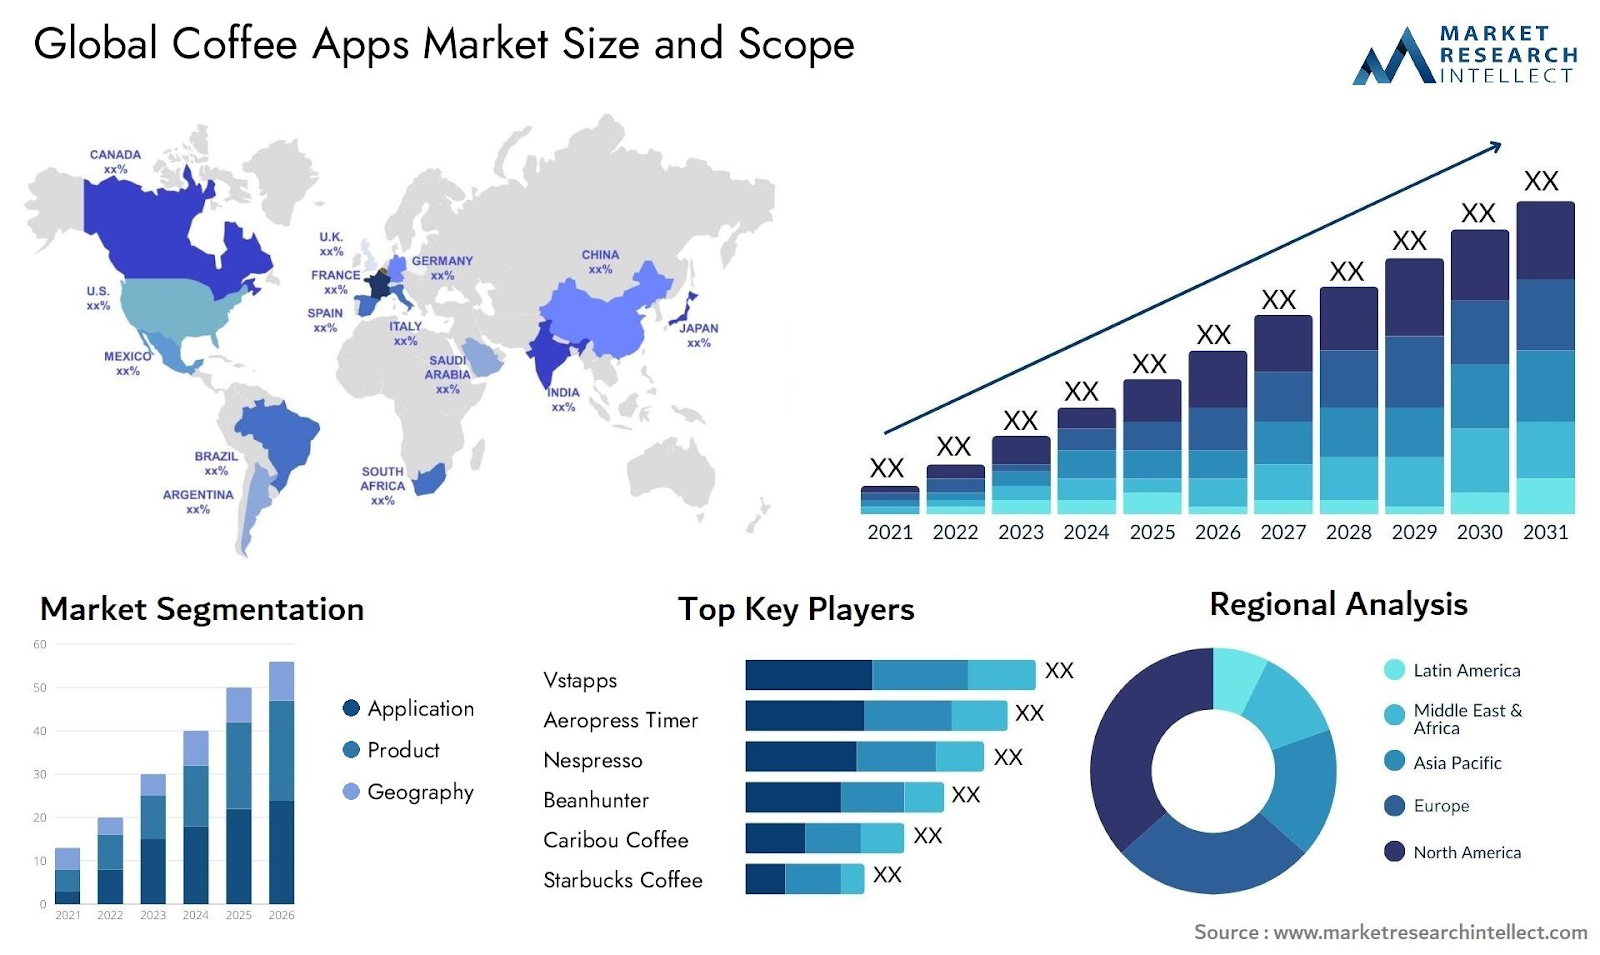 Key Market Takeaways for the Coffee Apps